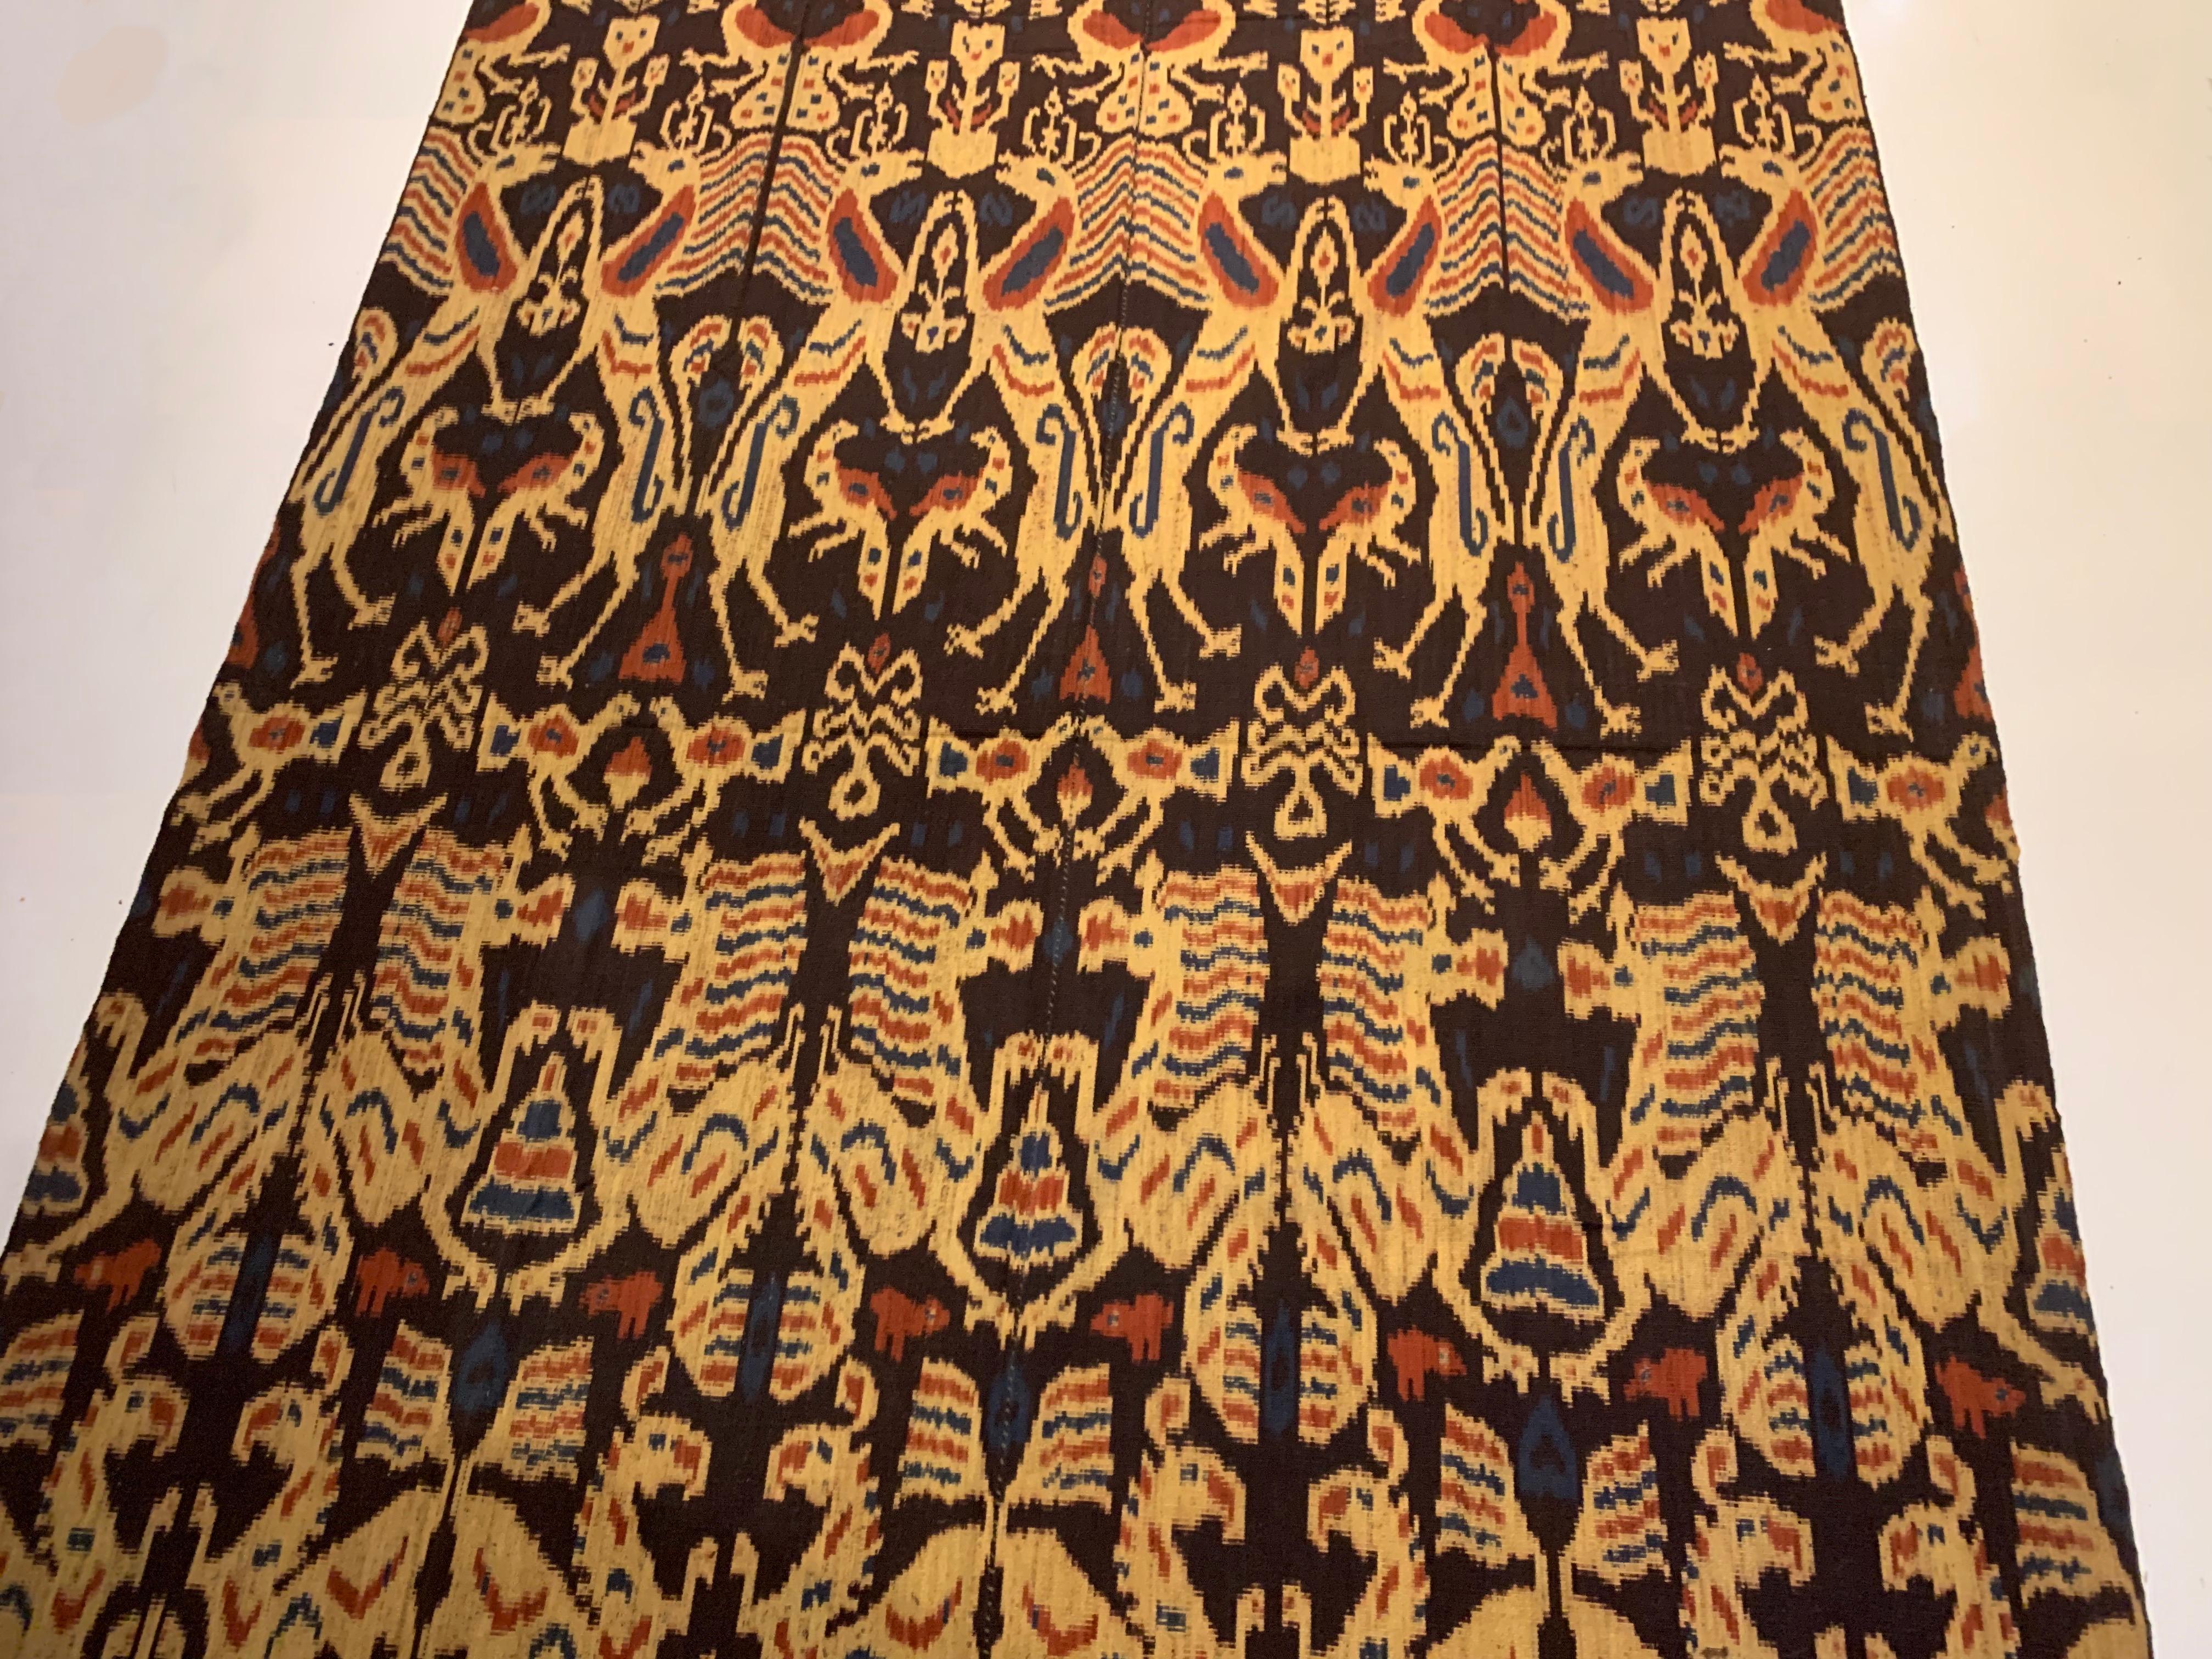 Dieses Ikat-Textil stammt von der Insel Sumba in Indonesien. Es wird mit natürlich gefärbten Garnen nach einer seit Generationen überlieferten Methode handgewebt. Es zeigt eine atemberaubende Vielfalt an unterschiedlichen Stammesmustern und -motiven